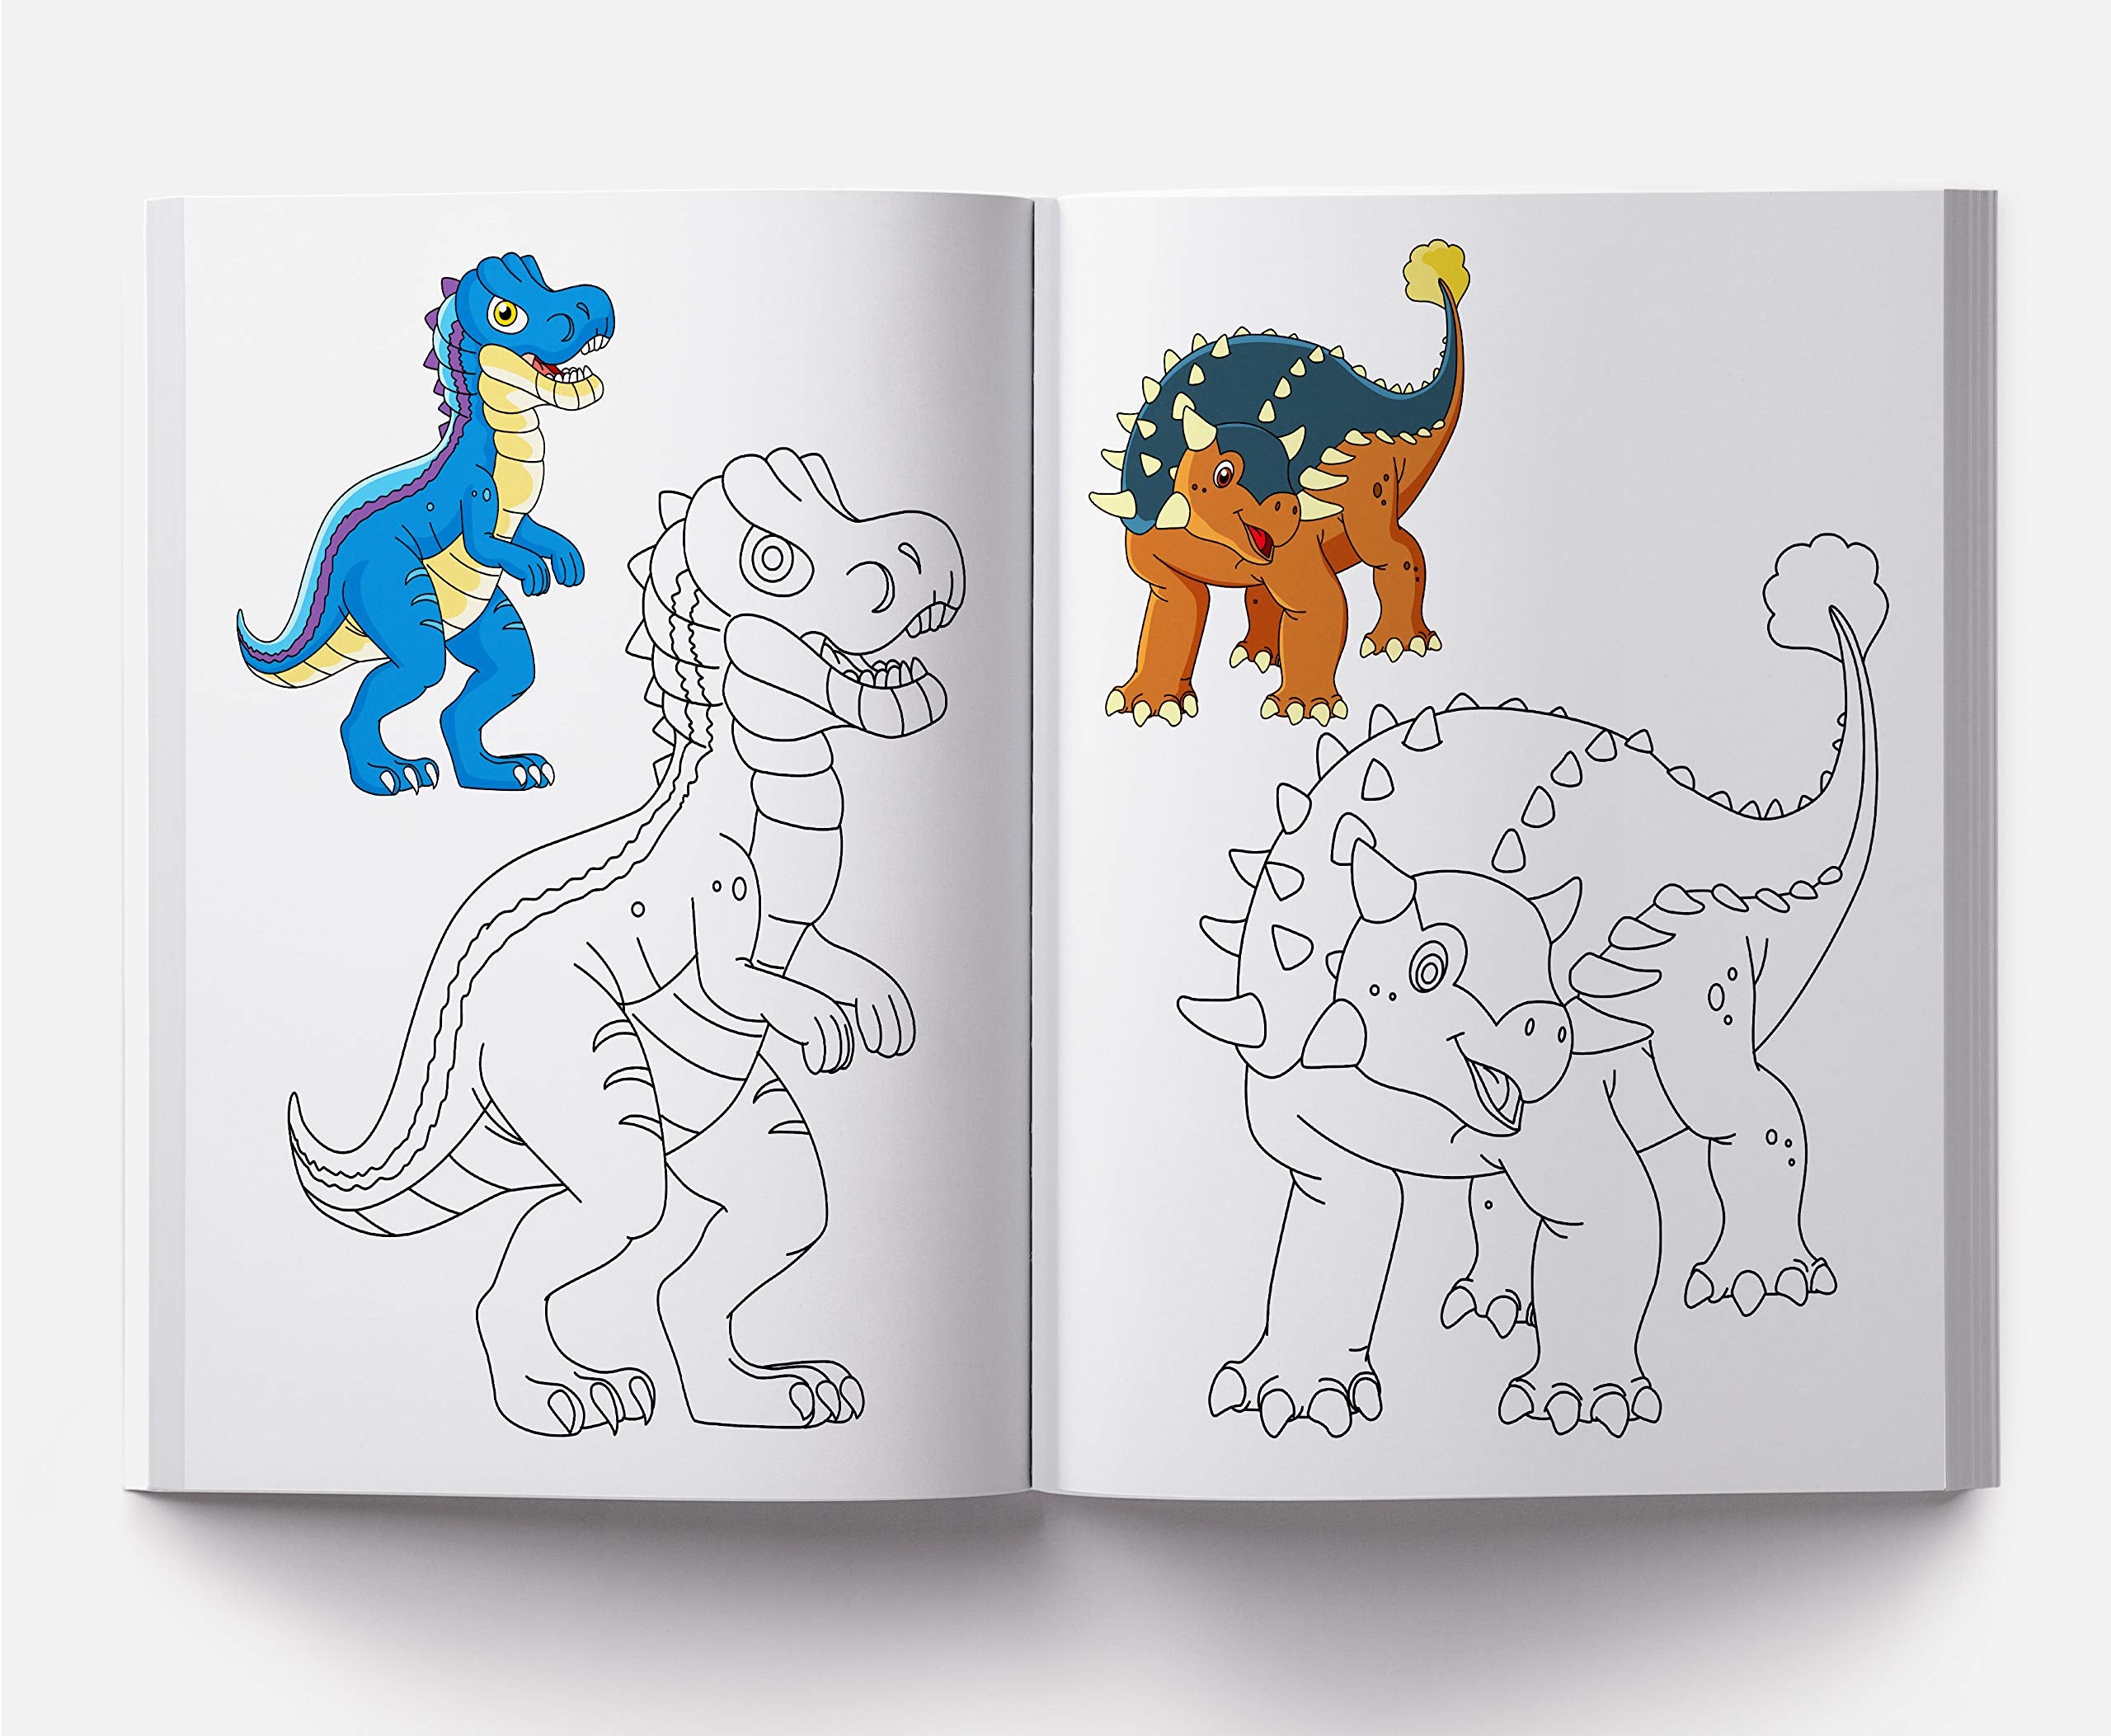 Little Artist Series Dinosaurs: Copy Colour Books